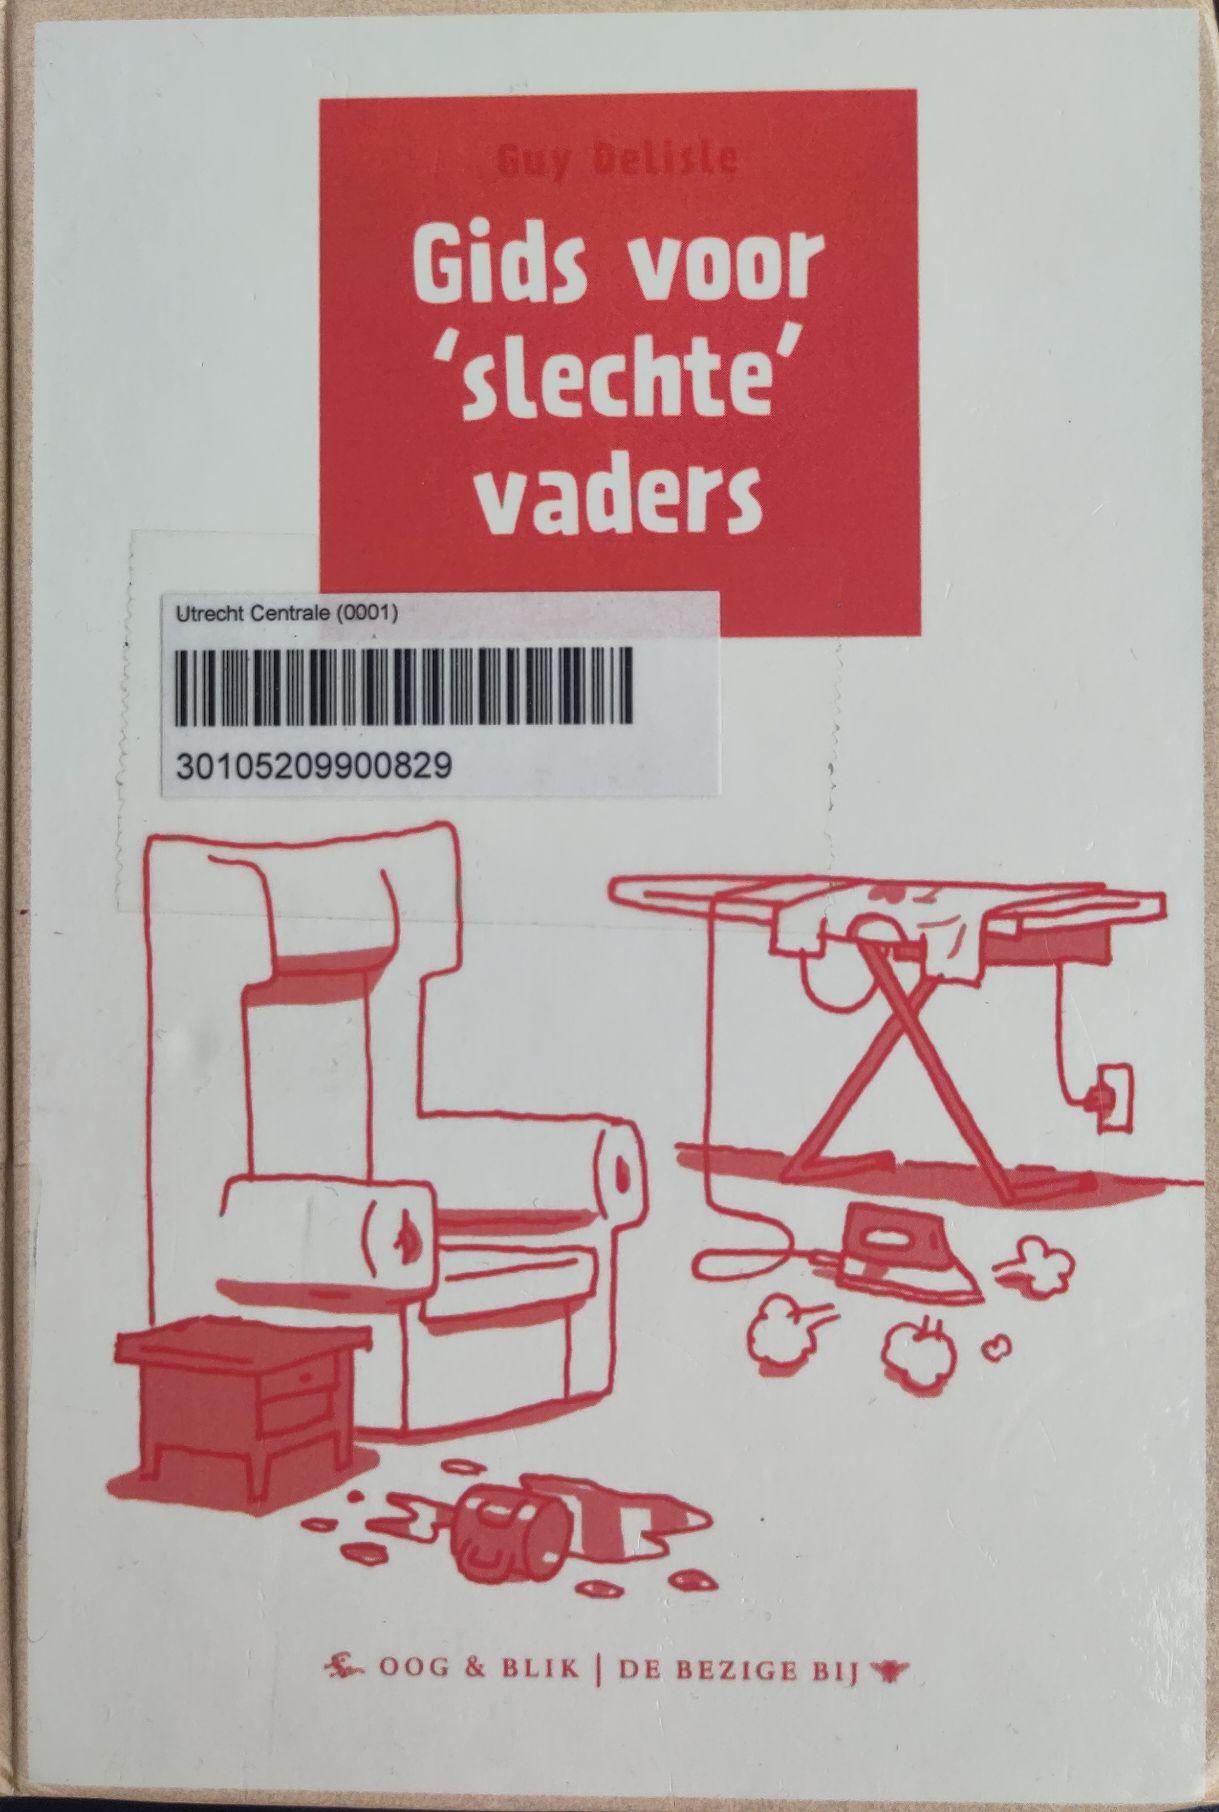 Guy Delisle: Gids voor 'slechte' vaders (Hardcover, Dutch language, 2012, Oog & Blik)